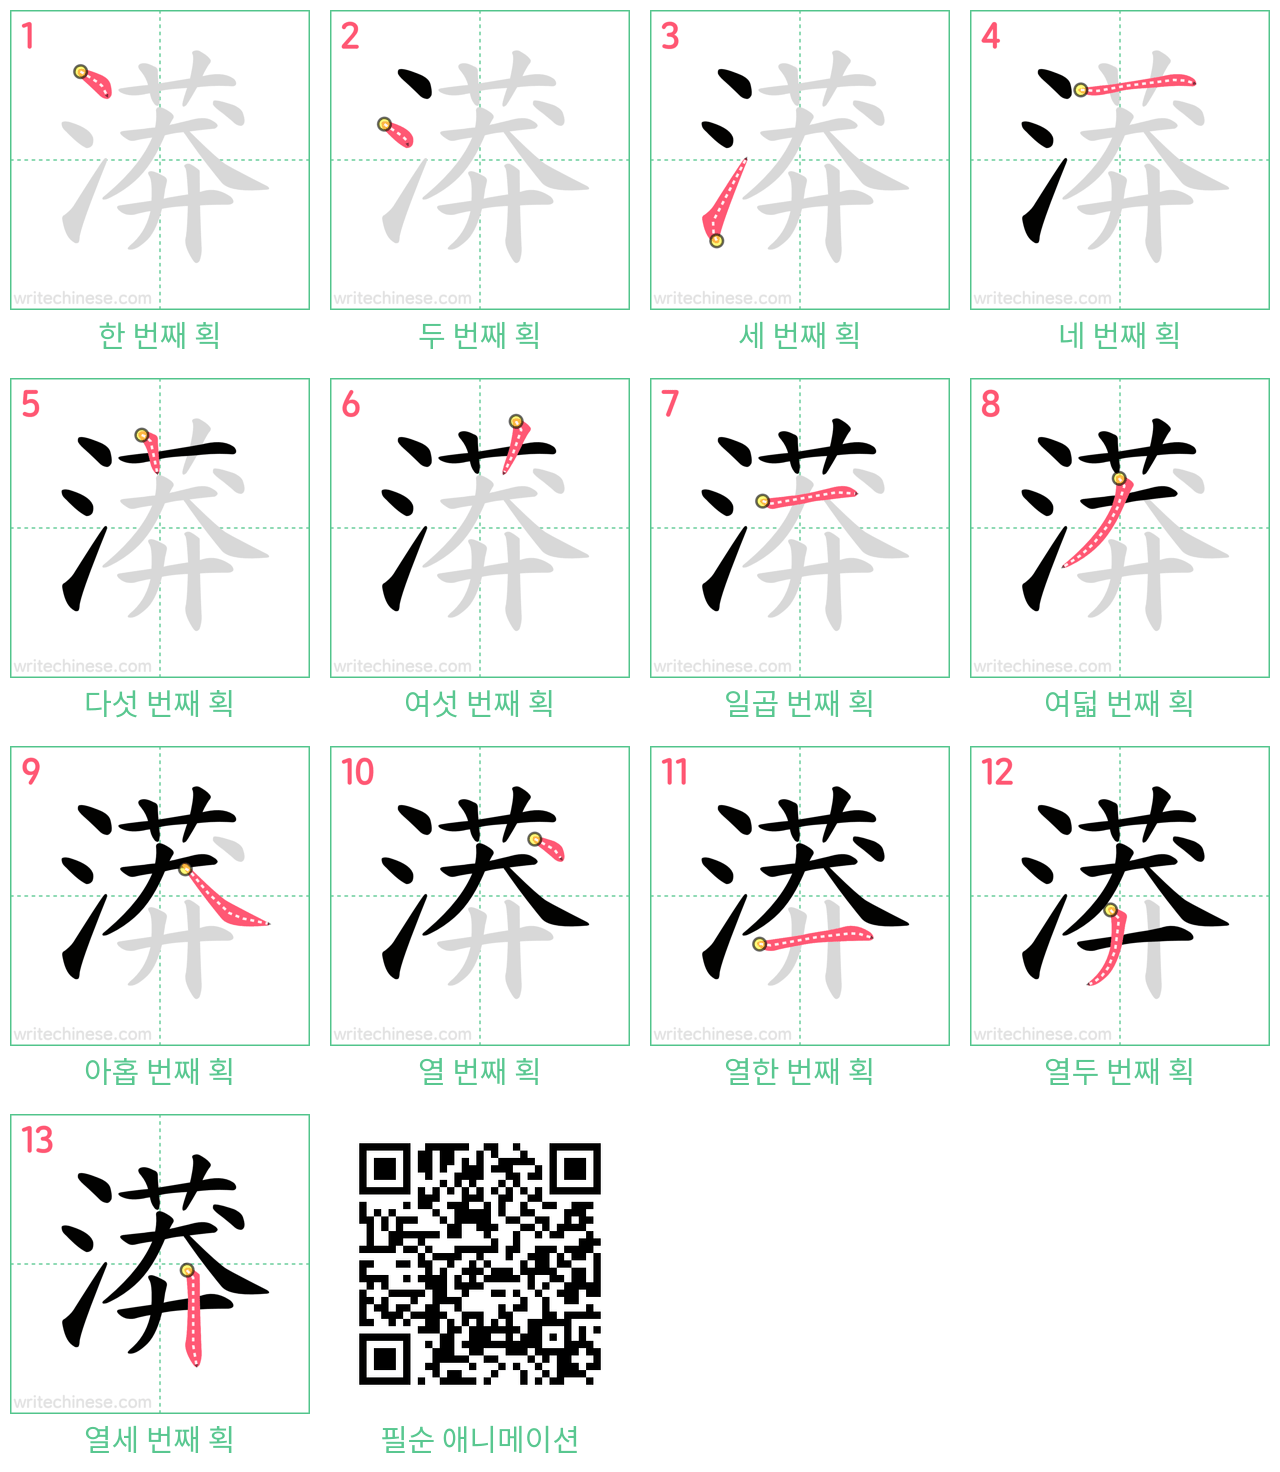 漭 step-by-step stroke order diagrams